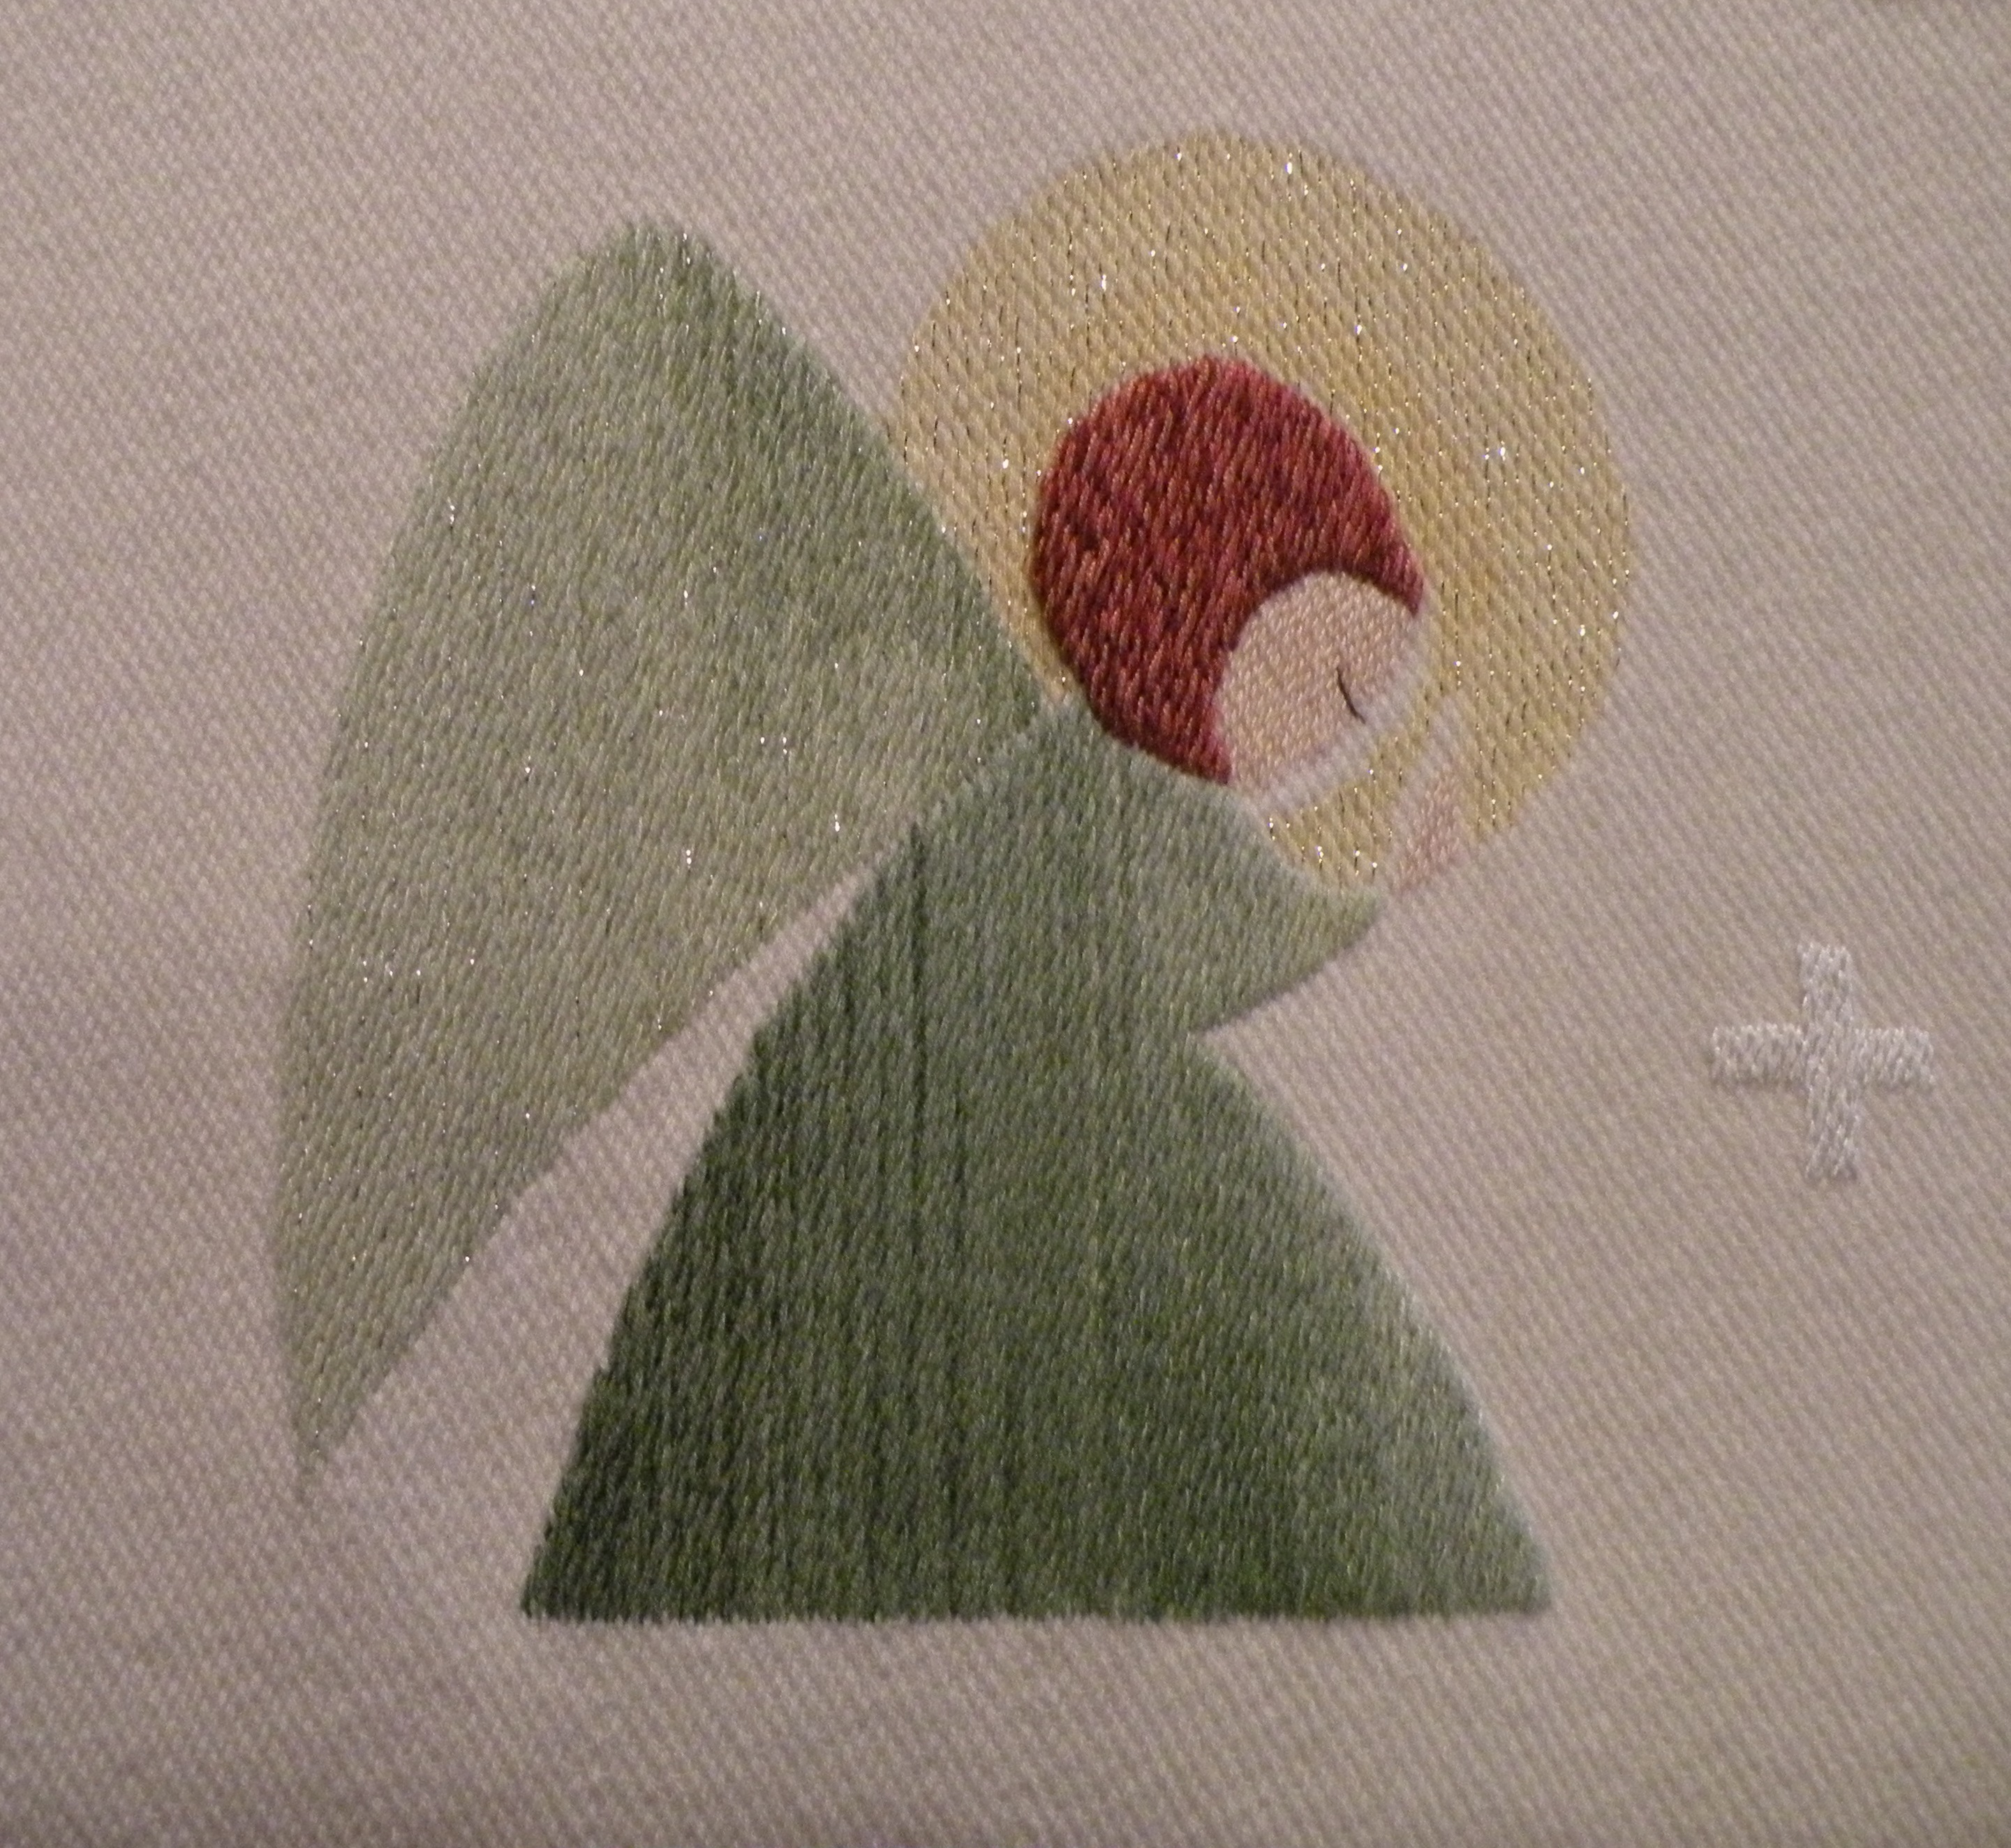 alttariliinaan kirjailtu rukoukseen kumartunut vihreäpukuinen enkeli